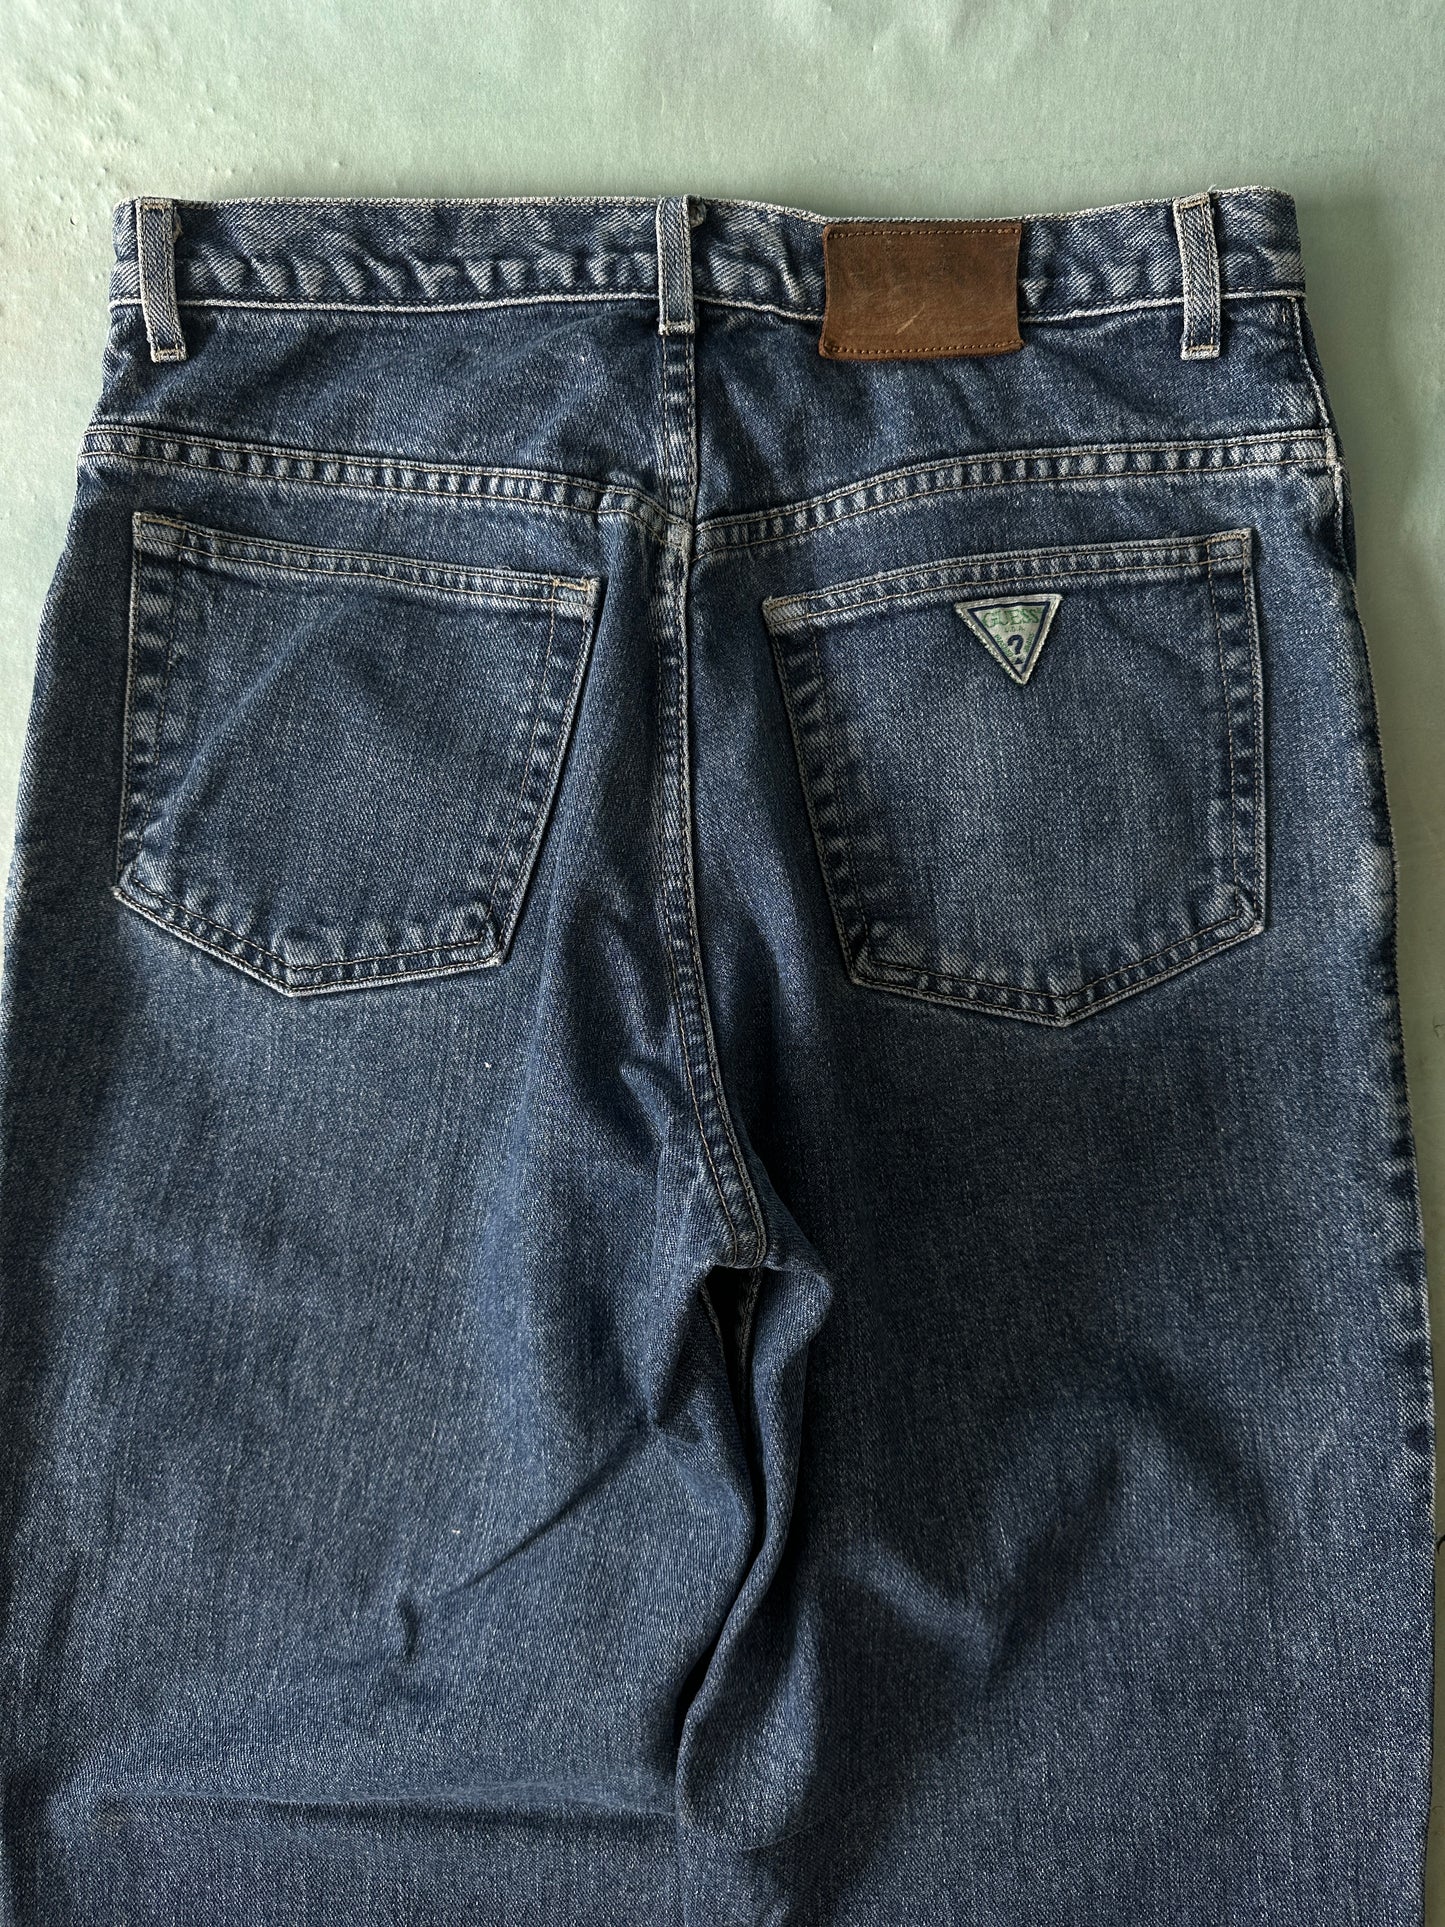 Guess Vintage Jeans - 32 x 32